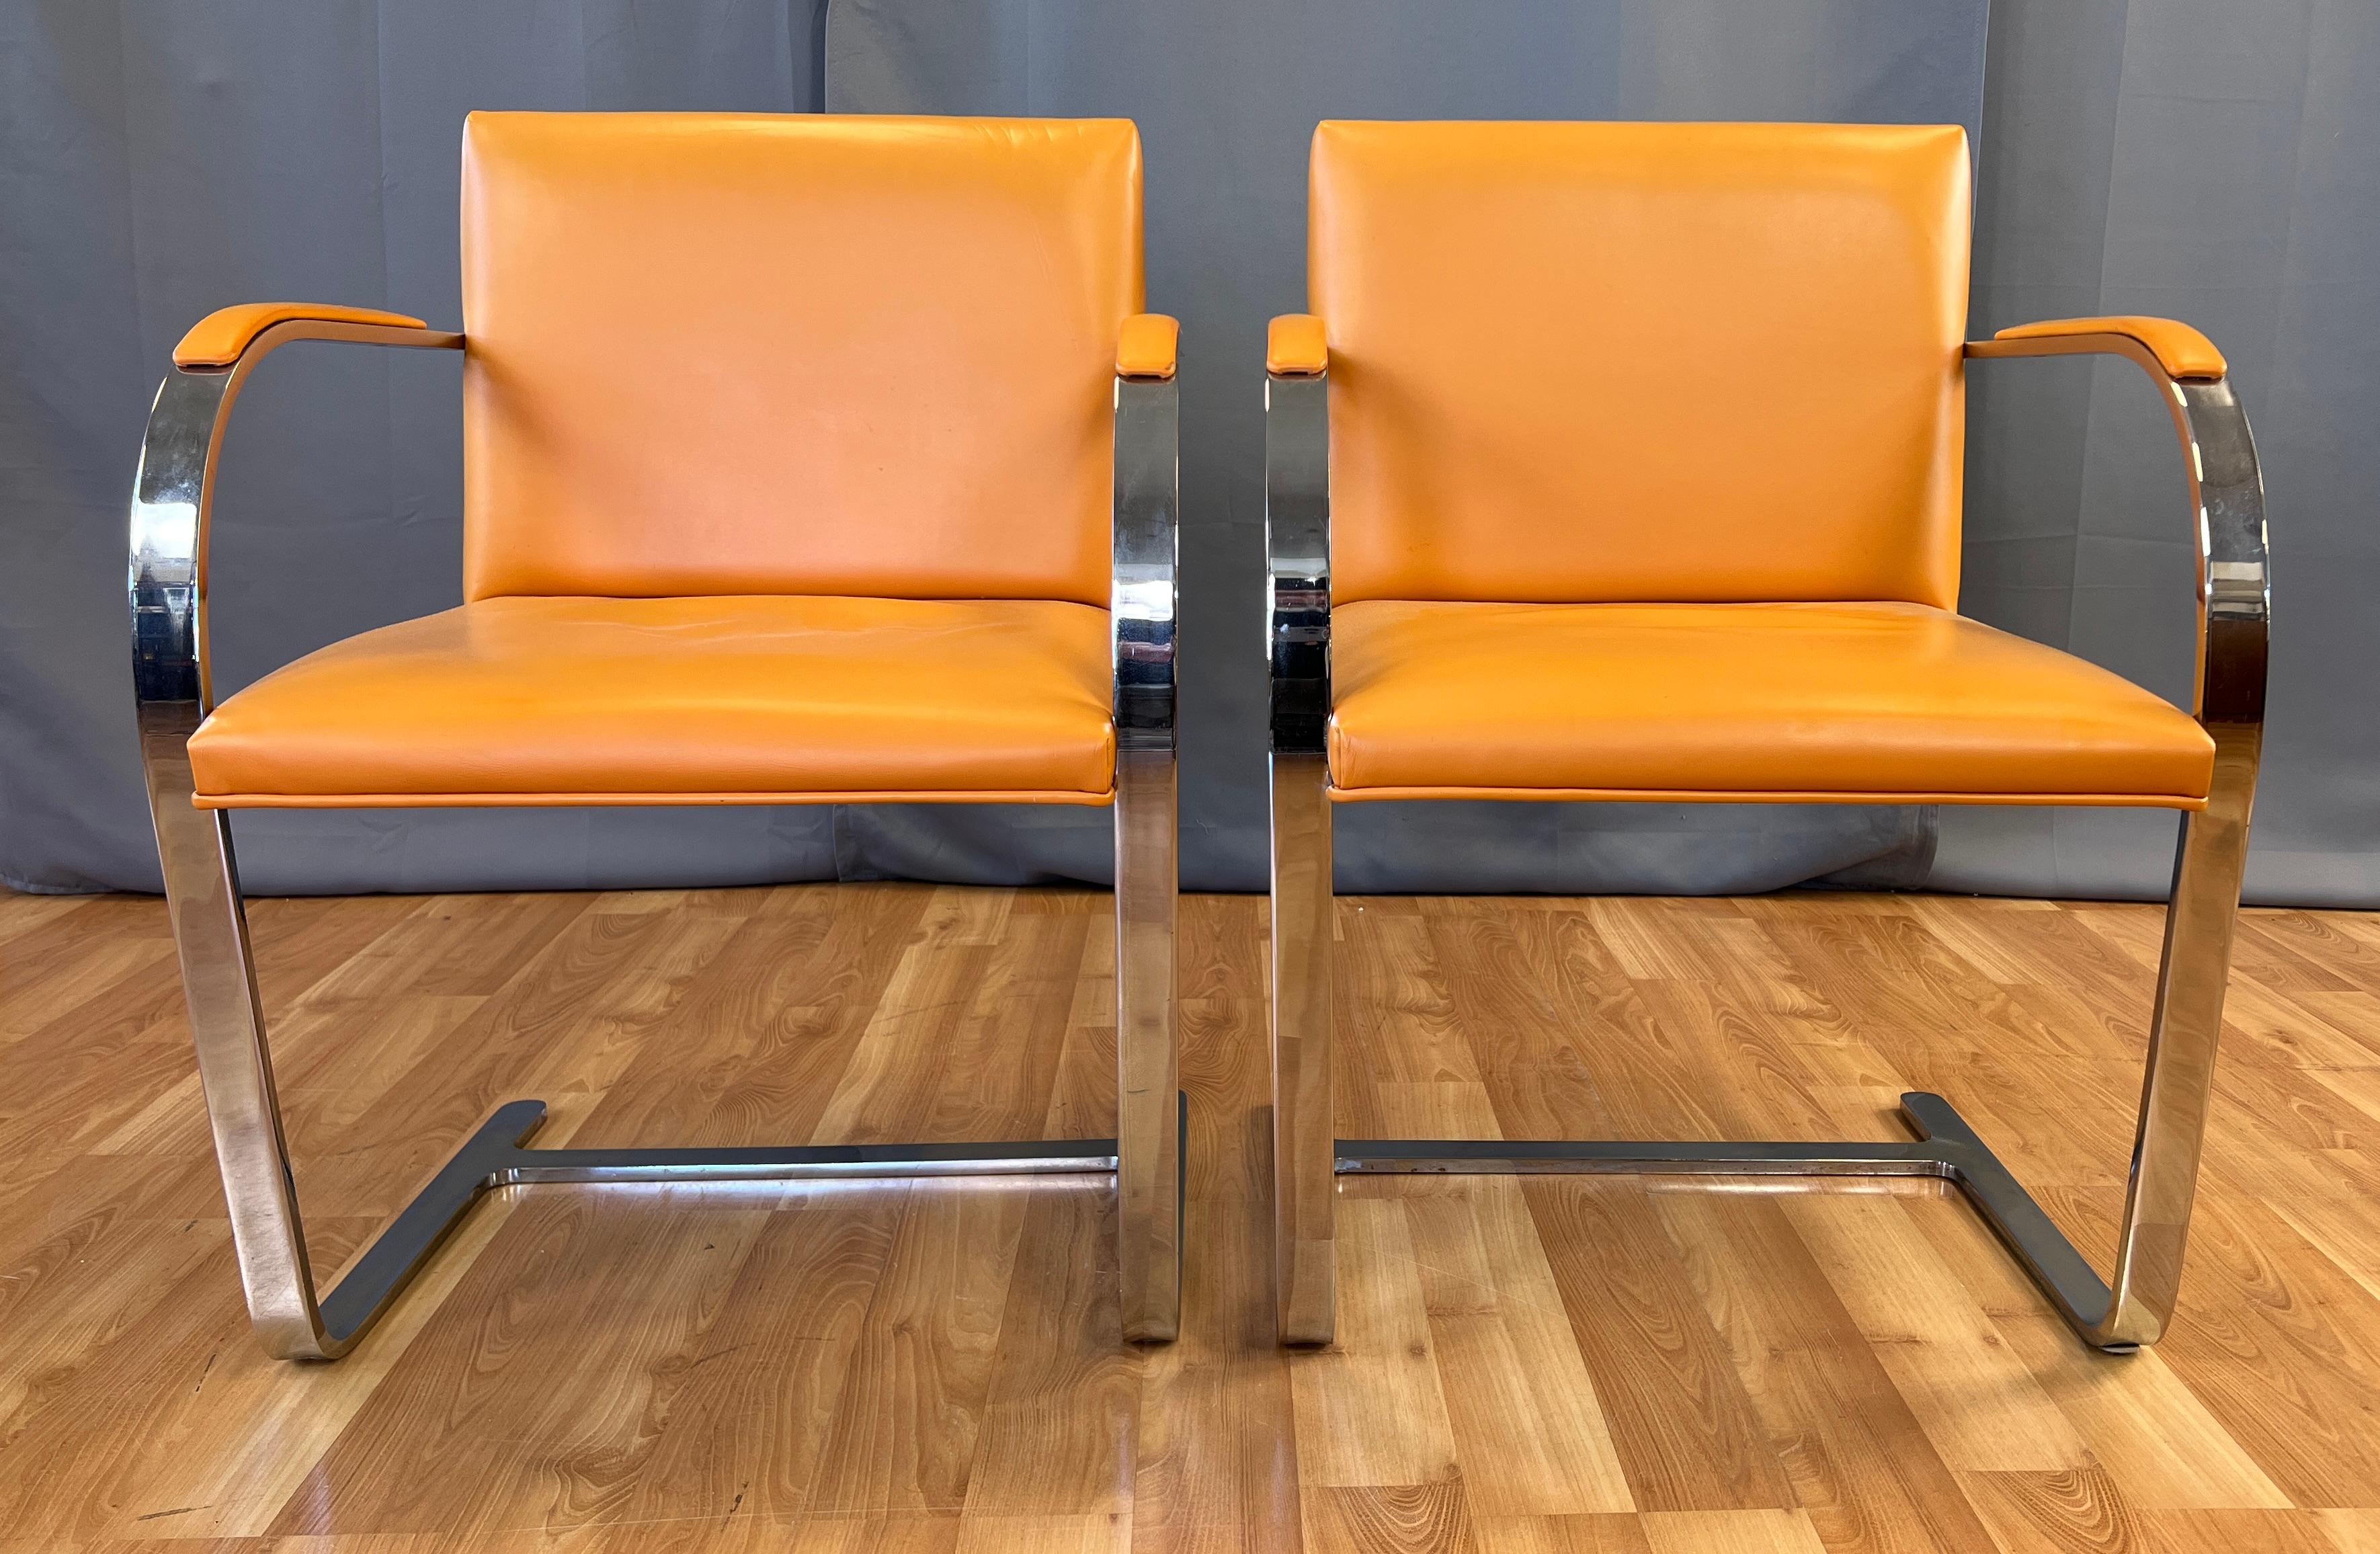 Deux magnifiques fauteuils CIRCA en cuir orange, dessinés par Mies Van der Rohe, datant des années 1970.  
Fabriqué par Gordon International, dans le pays d'Argentine. 
Les chaises sont de conception classique, avec une belle touche de couleur grâce